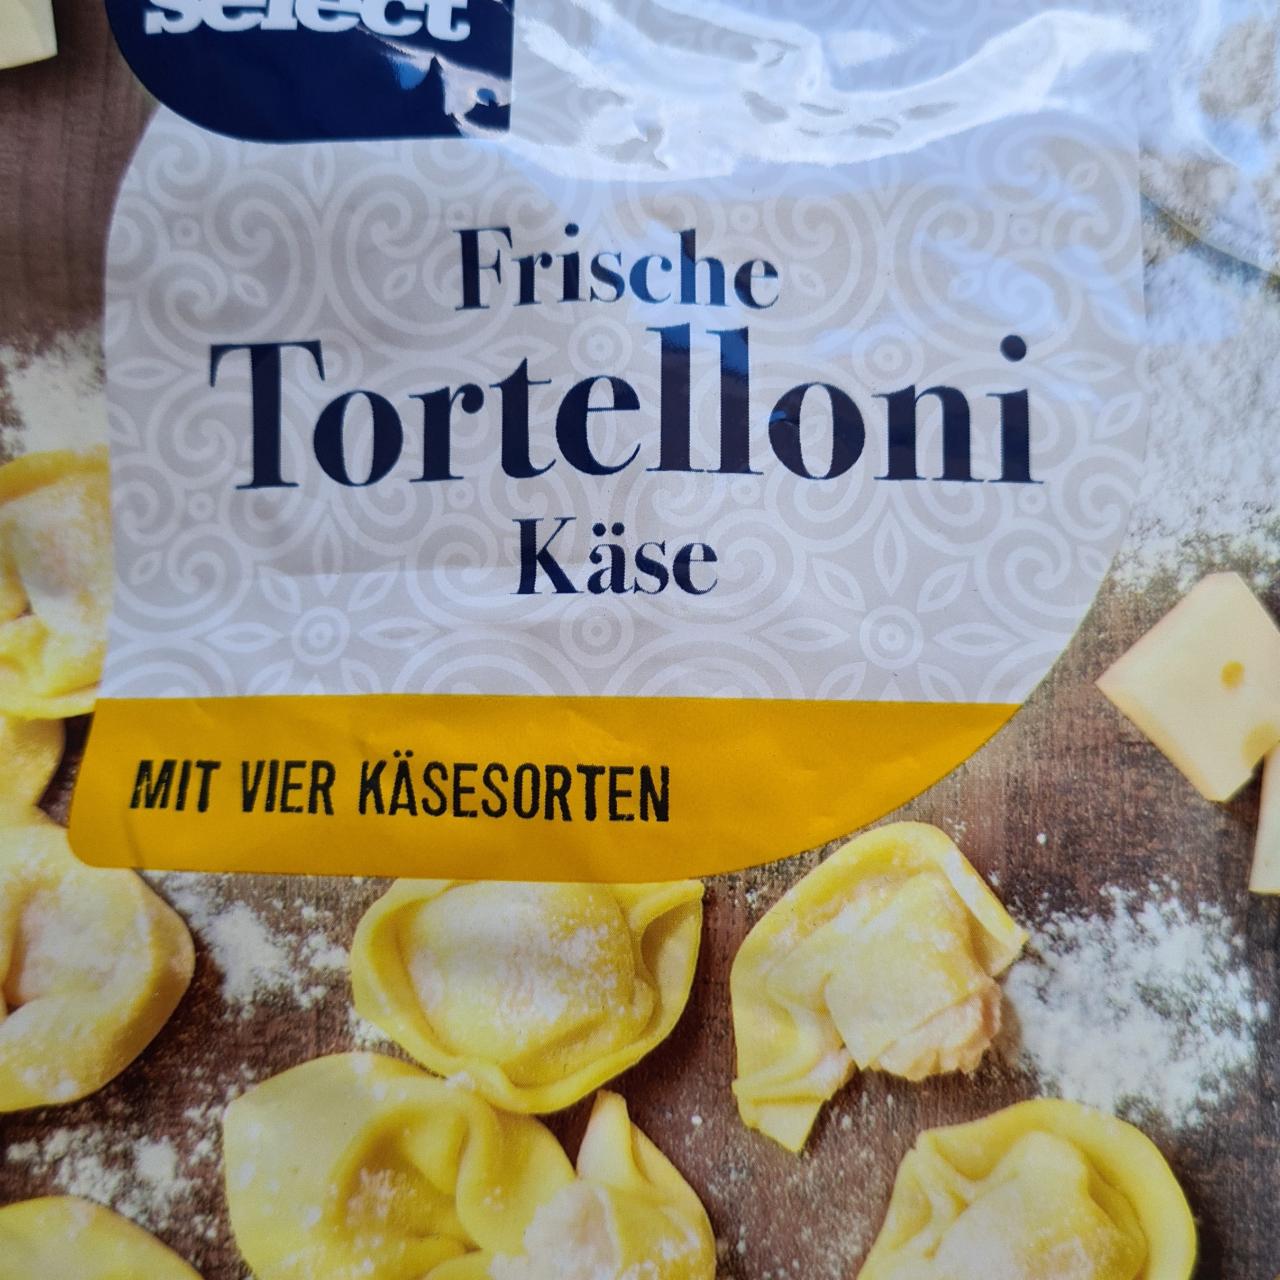 kalorie, - a nutriční Chef kJ Käse hodnoty Tortellini Select